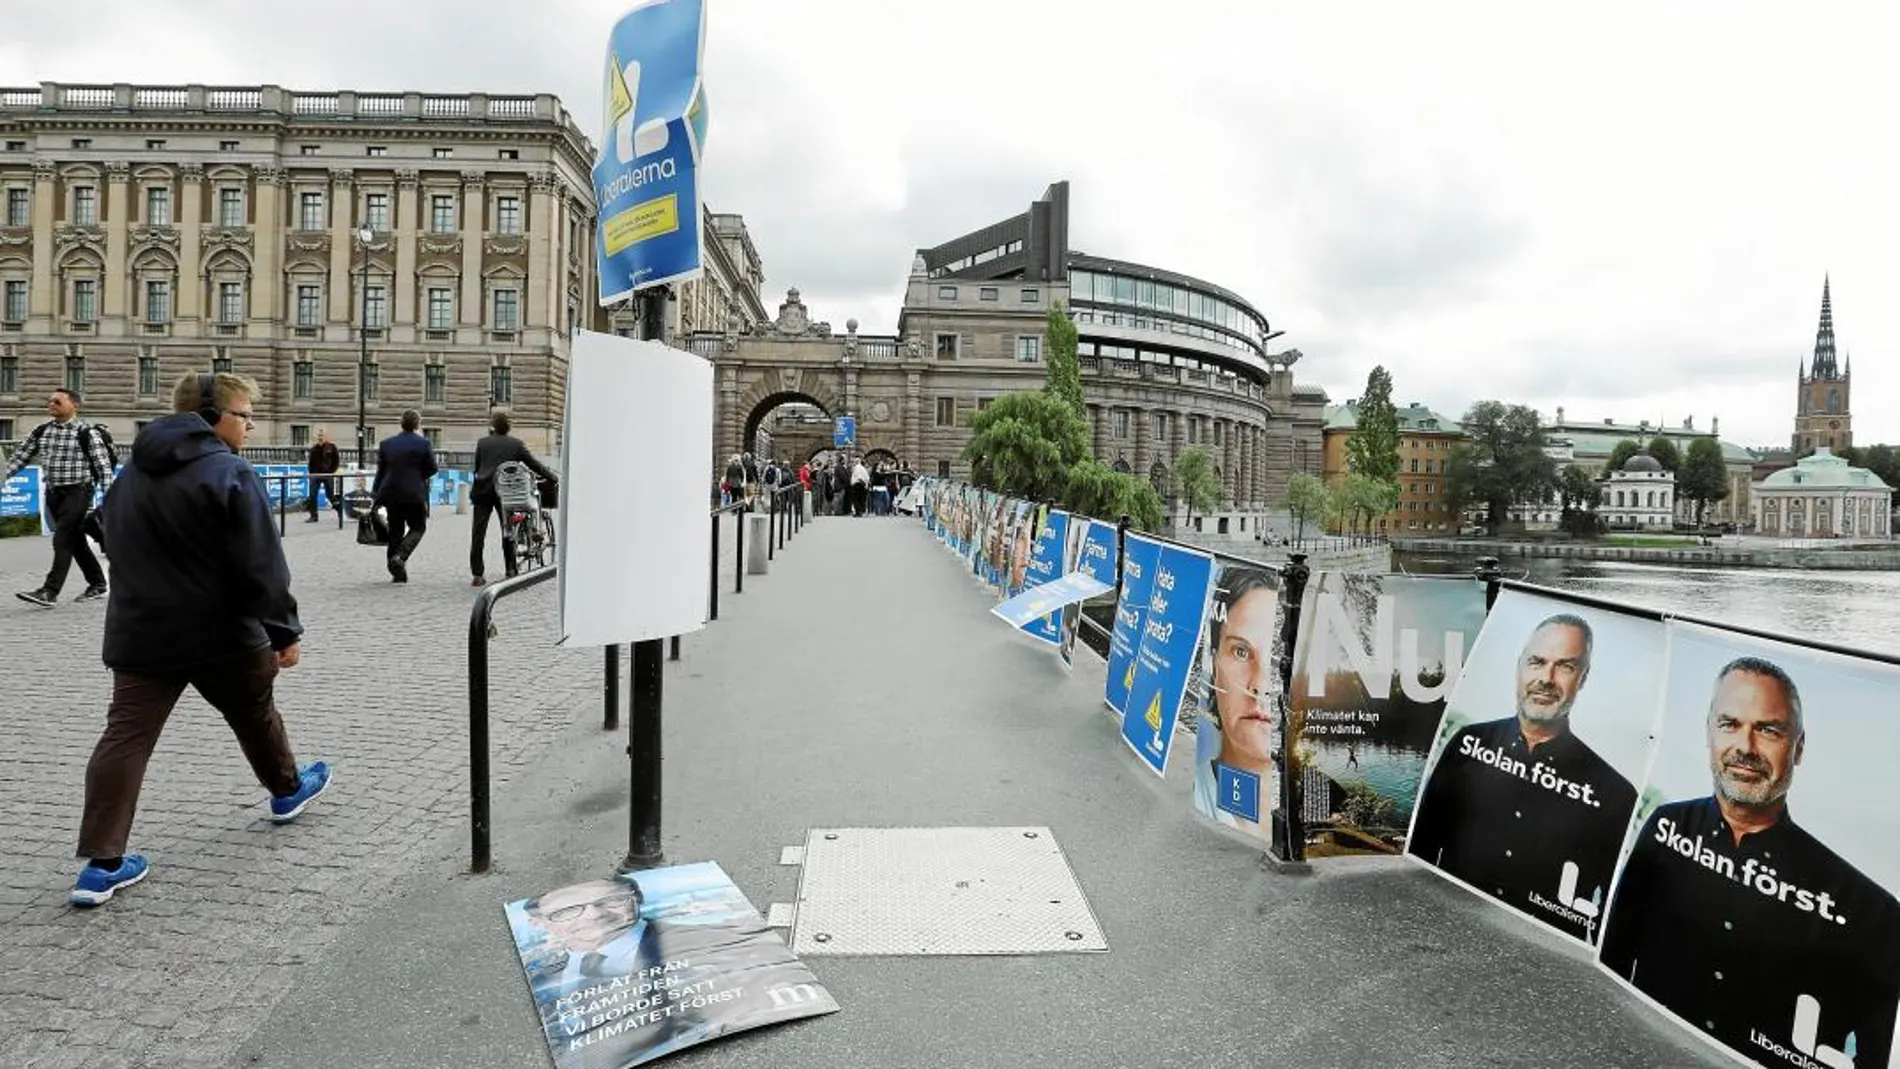 Incertidumbre política en Suecia. Varios ciudadanos suecos caminan junto a carteles de propaganda electoral en una calle de Estocolmo, ayer / Reuters